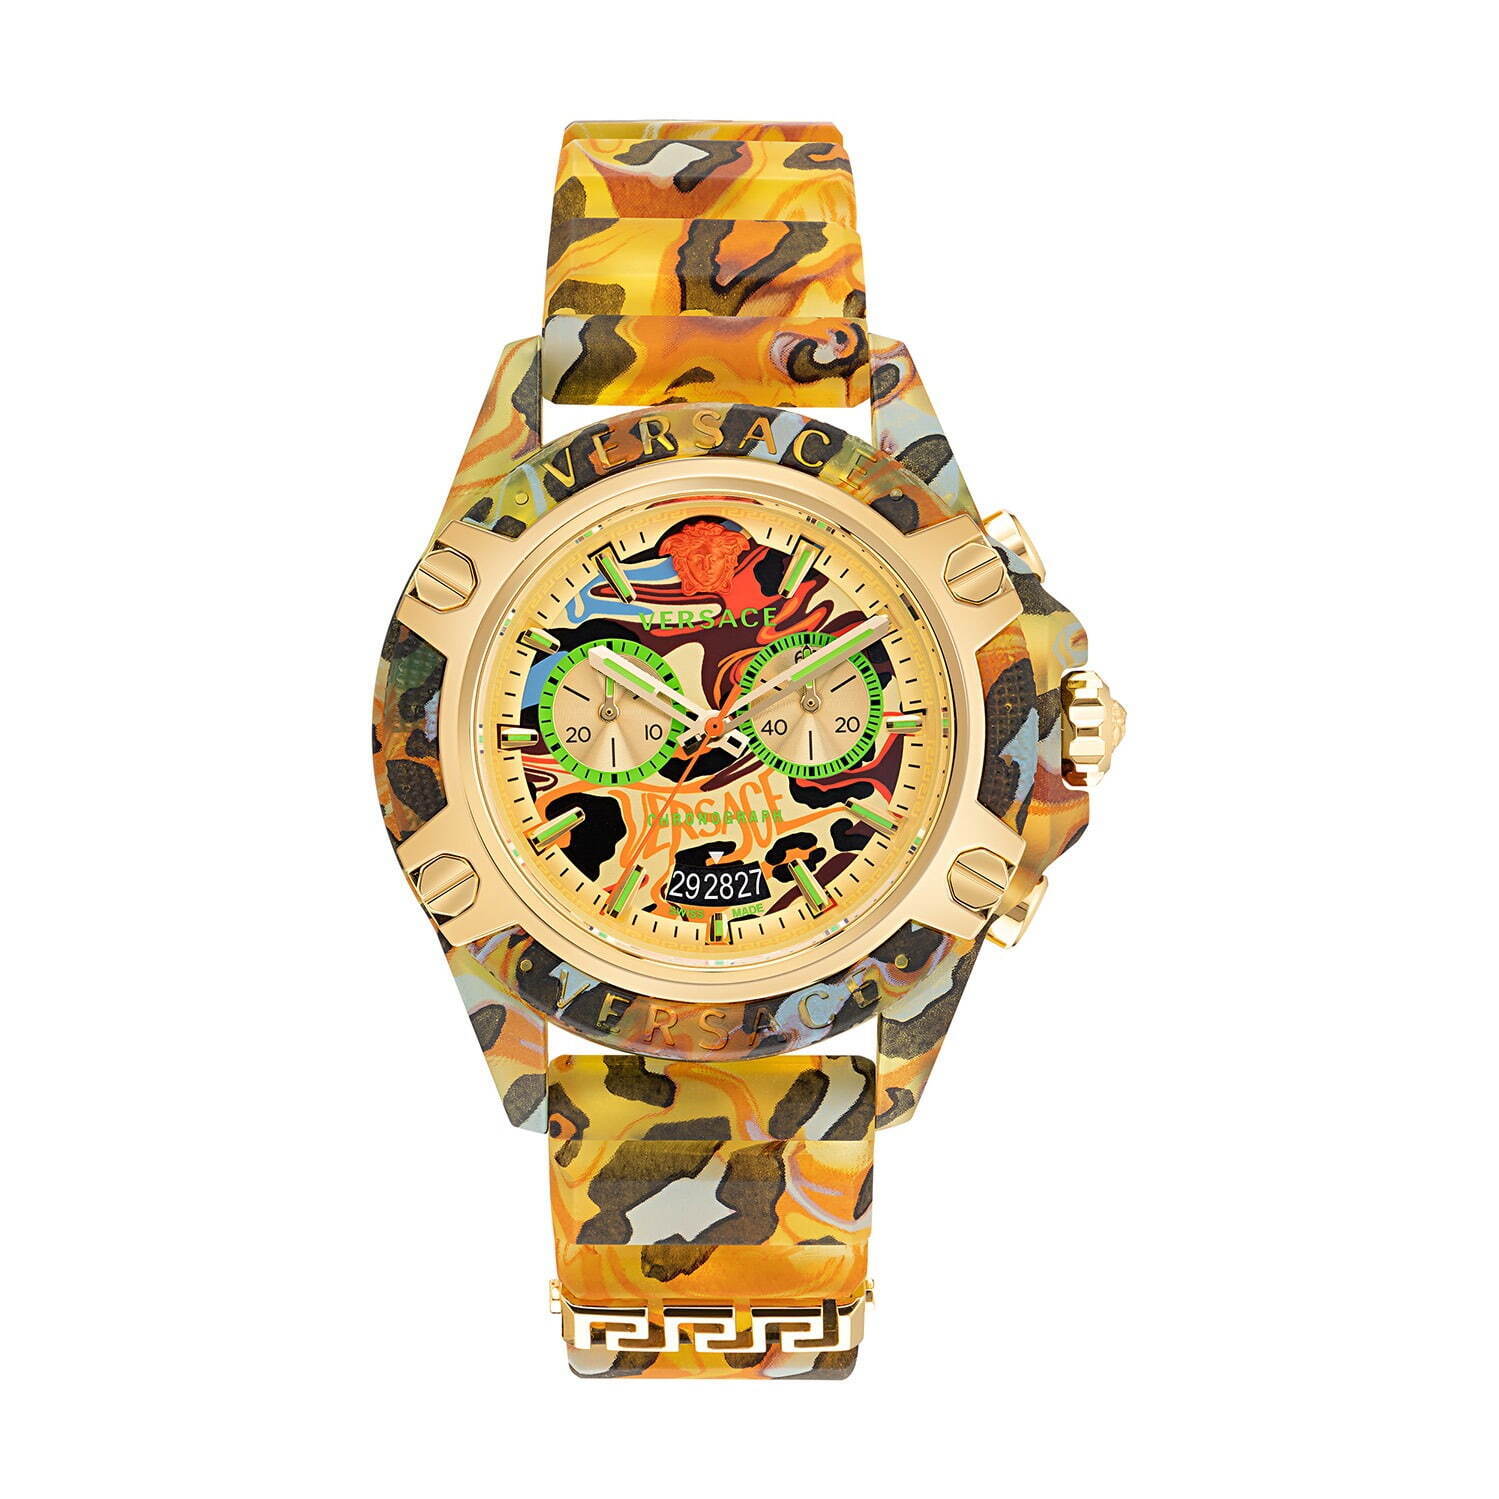 ヴェルサーチェの腕時計「アイコン アクティブ」新色、カモフラージュ